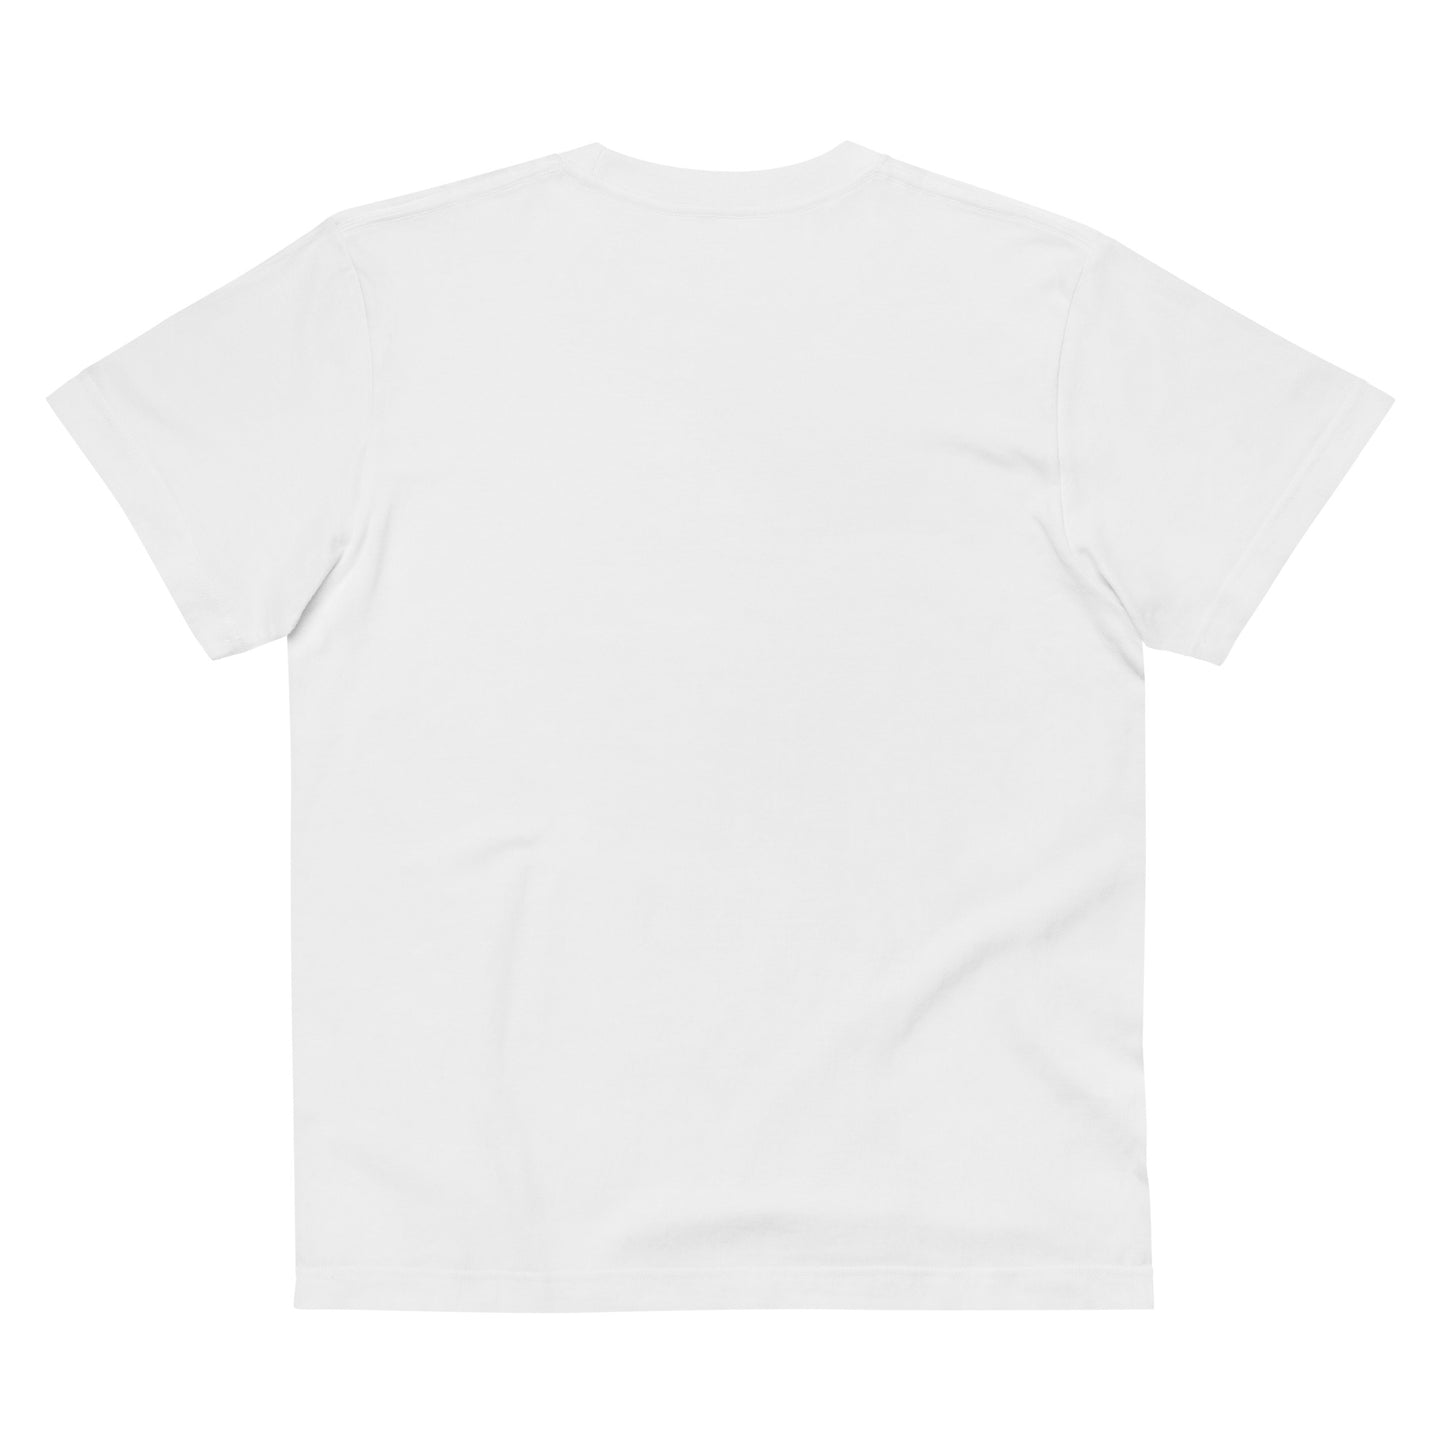 E016 - เสื้อยืด/รูปร่างมาตรฐาน (กระโดดอวกาศ : สีขาว/สีดำ)